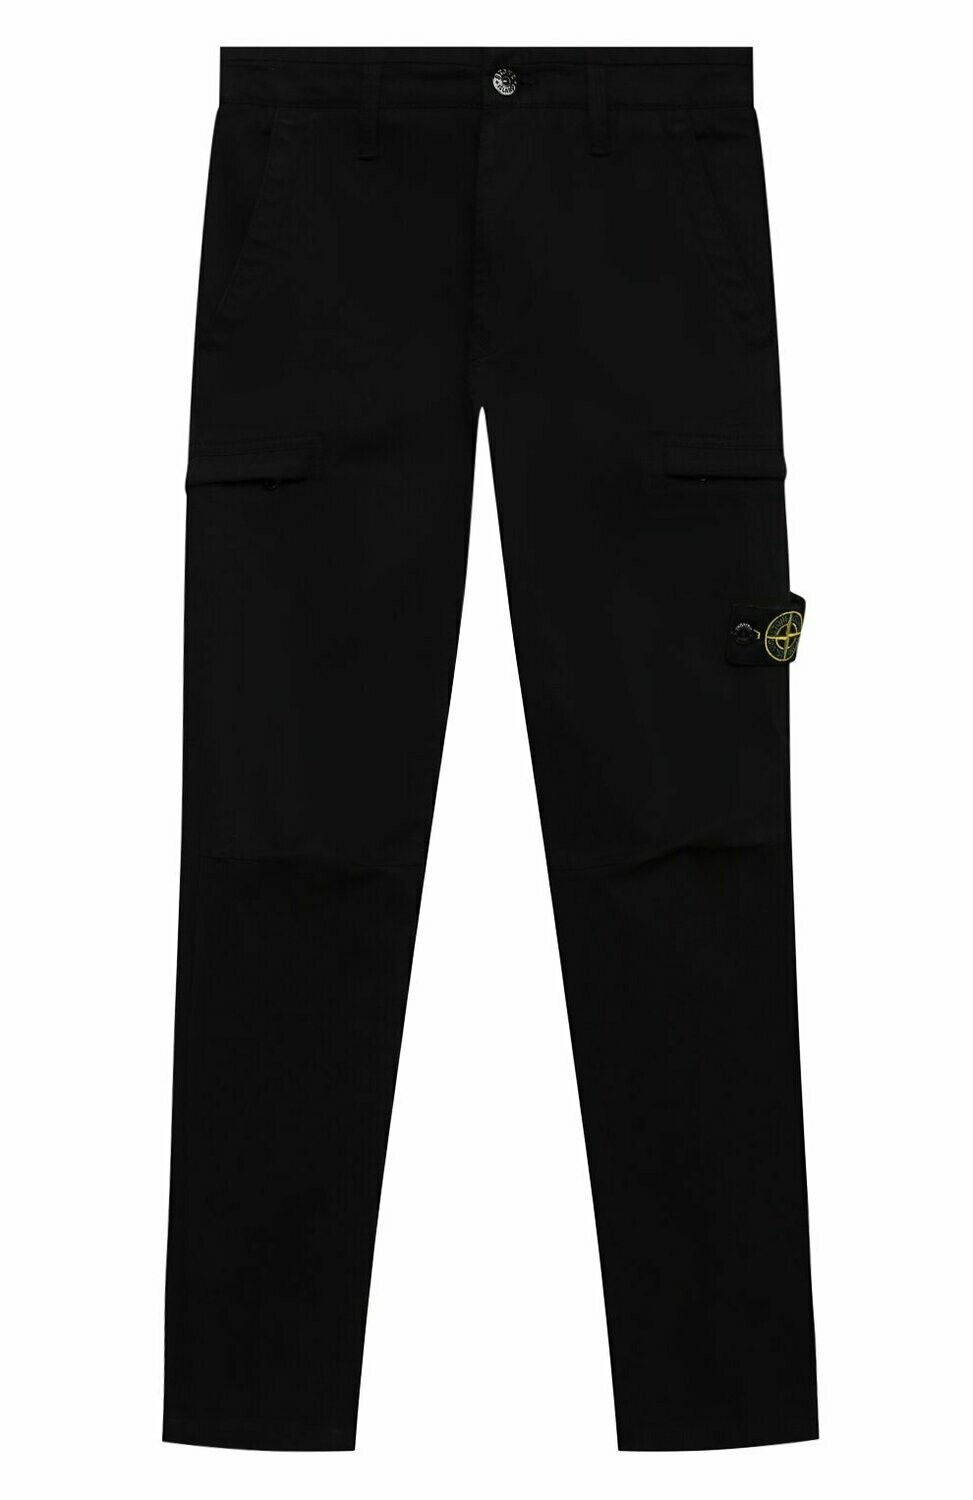 Stone Island - Pantalone 5 tasche nero in cotone strutturato, Size: 8 anni